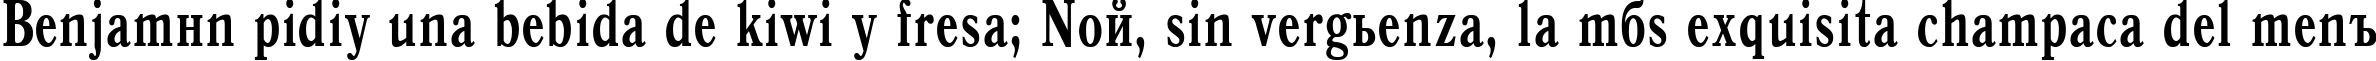 Пример написания шрифтом Antiqua Bold70b текста на испанском